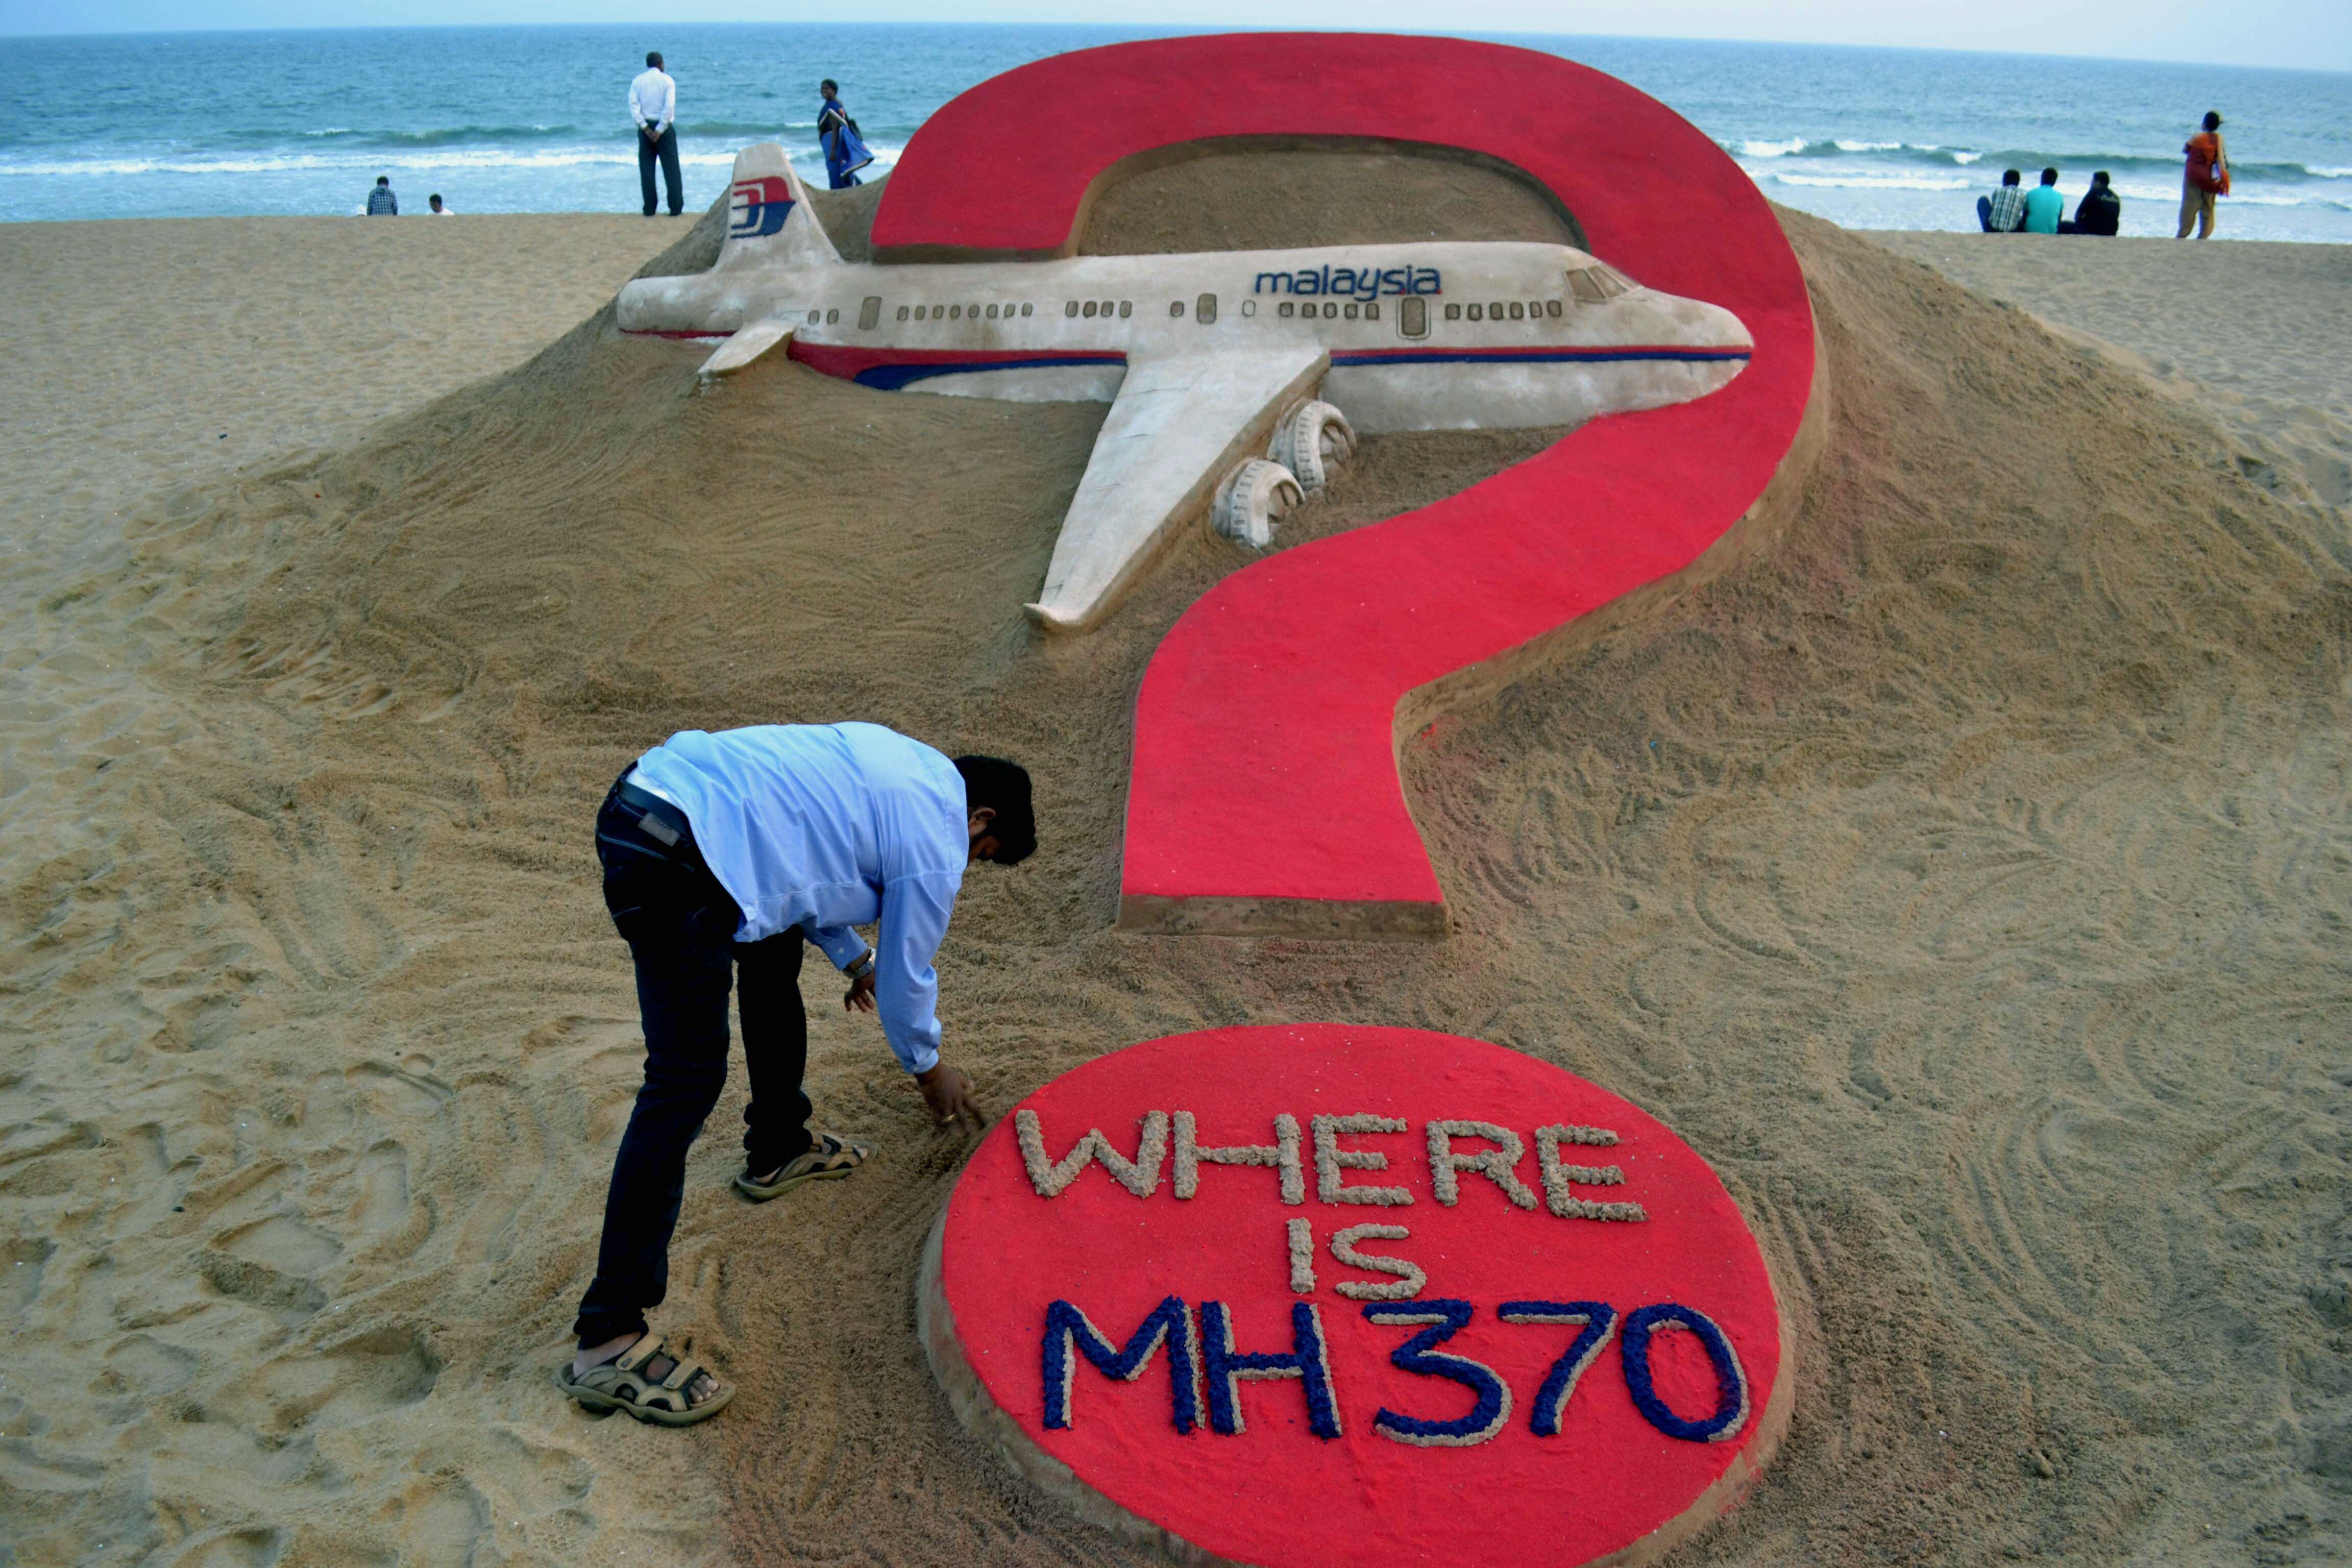 Los familiares de las víctimas siguen esperando el esclarecimiento de los hechos sucedidos durante el vuelo MH370 de la aerolínea Malaysia Airlines. Foto: AFP